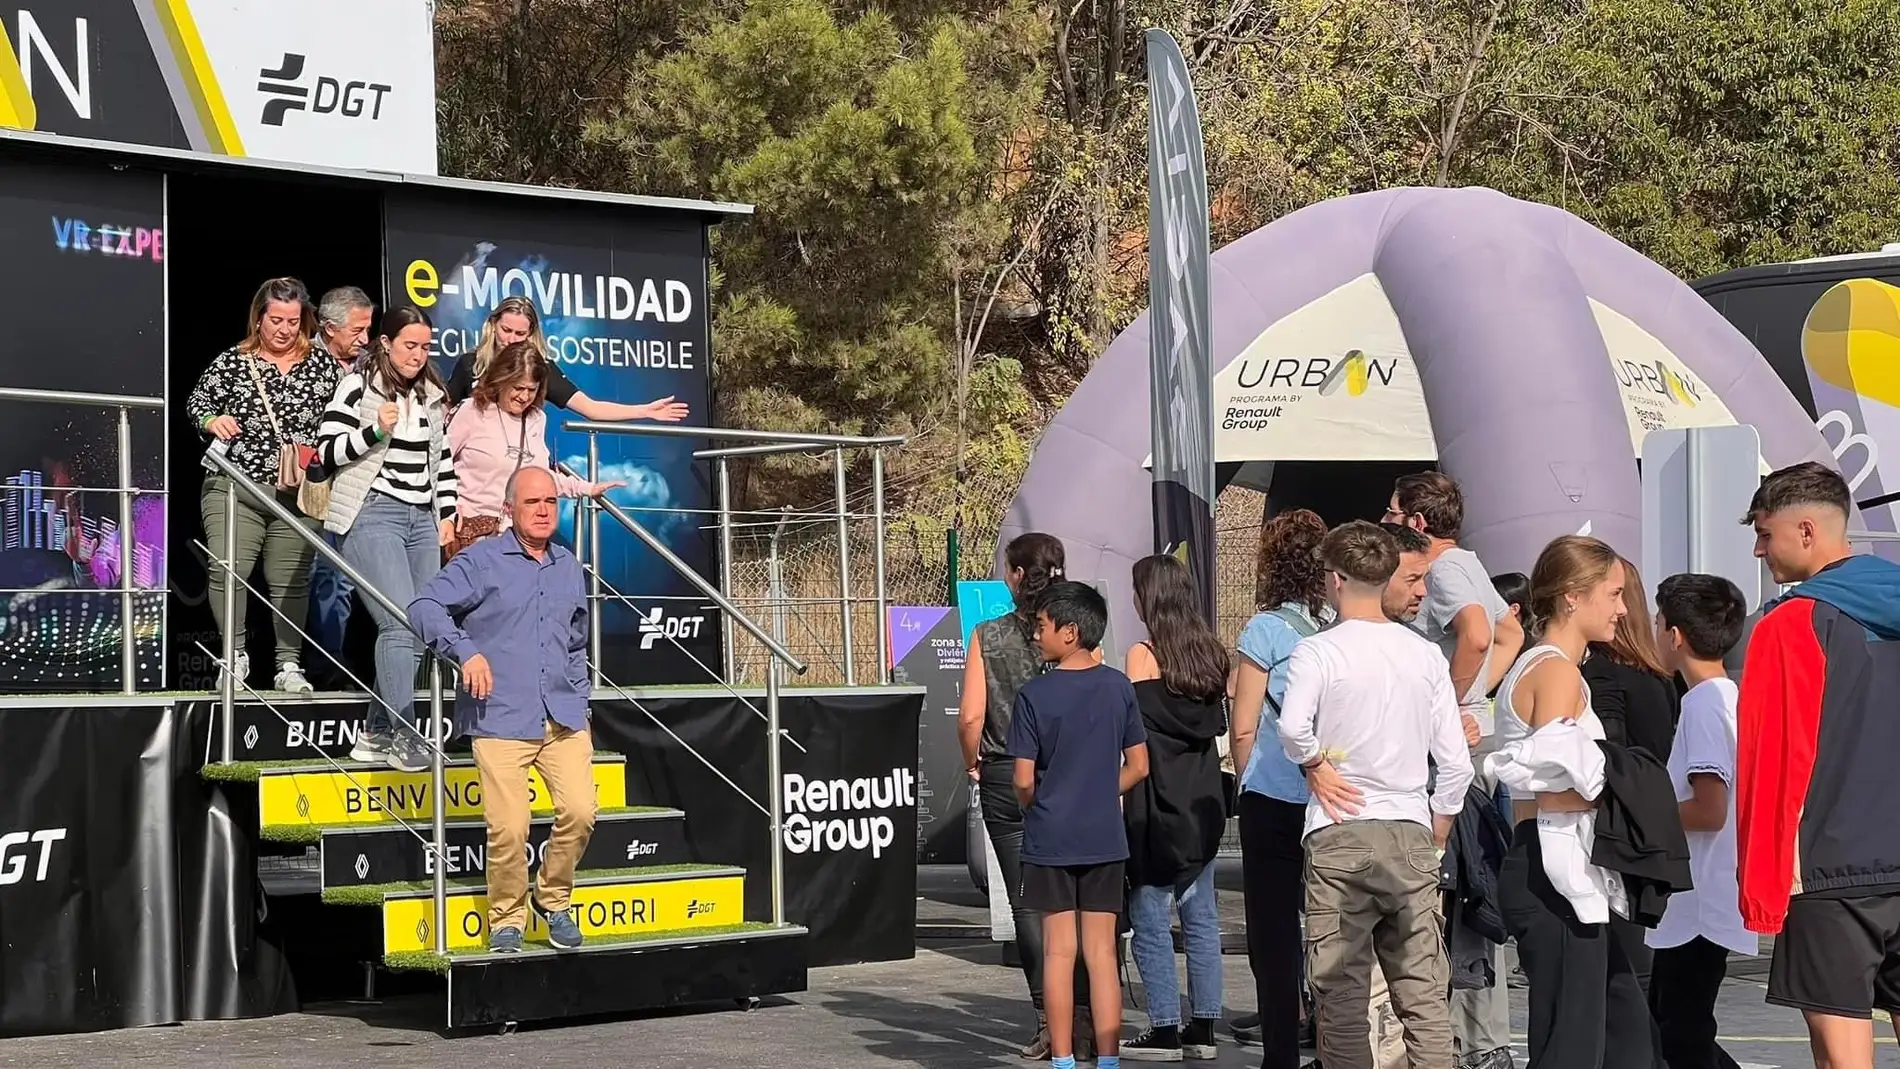 Málaga acoge el ProgramaURBAN, una exposición pionera sobre la e-Movilidad que ha recorrido toda España y finaliza en esta ciudad